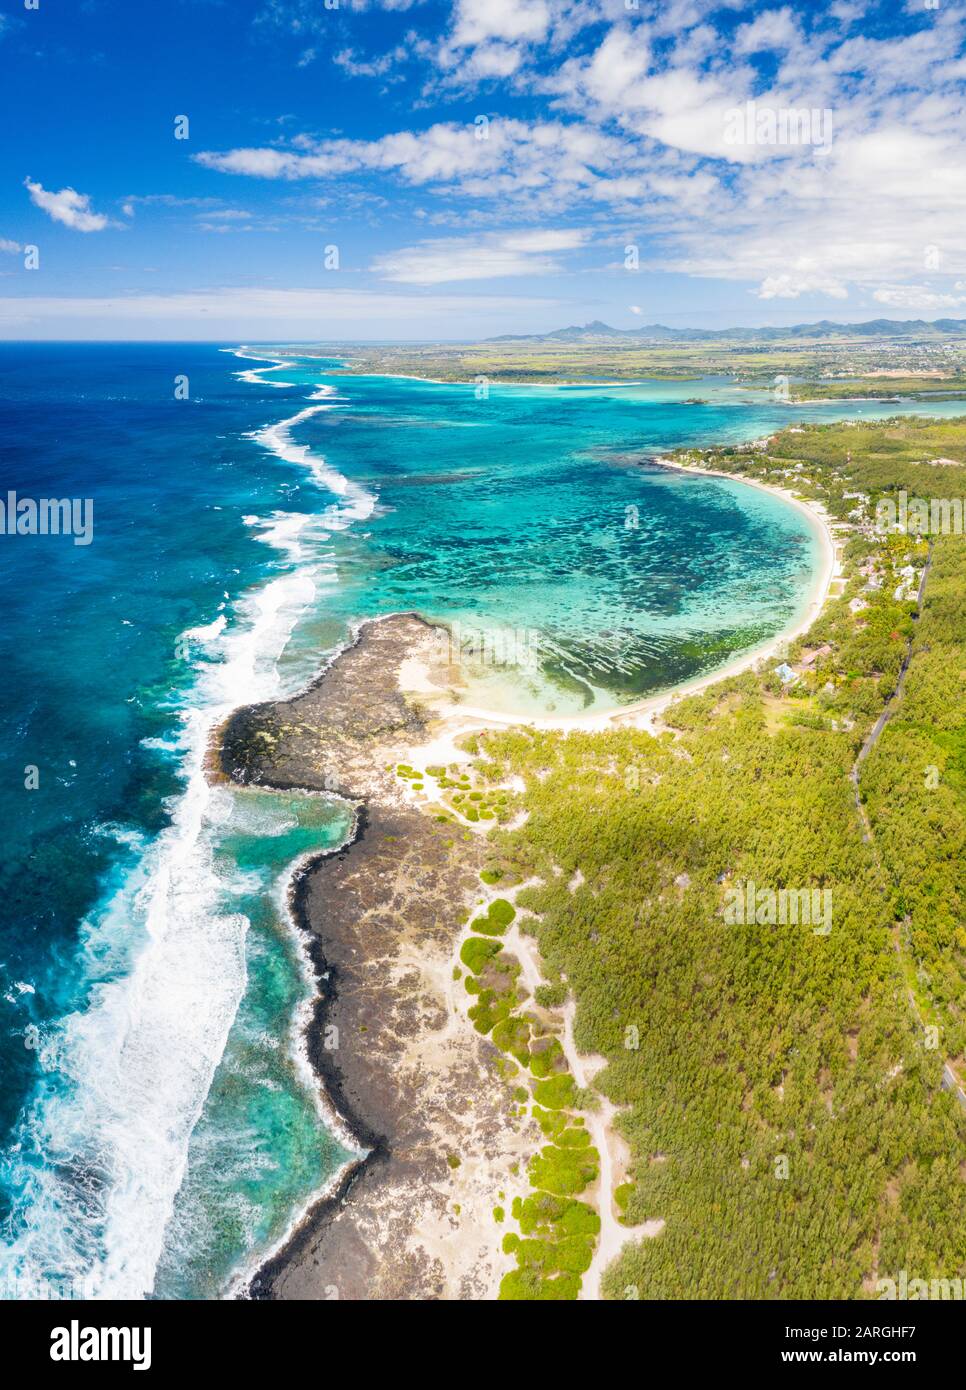 Vista aérea de la playa pública tropical bañada por las olas del océano, Poste Lafayette, costa este, Mauricio, Océano Índico, África Foto de stock